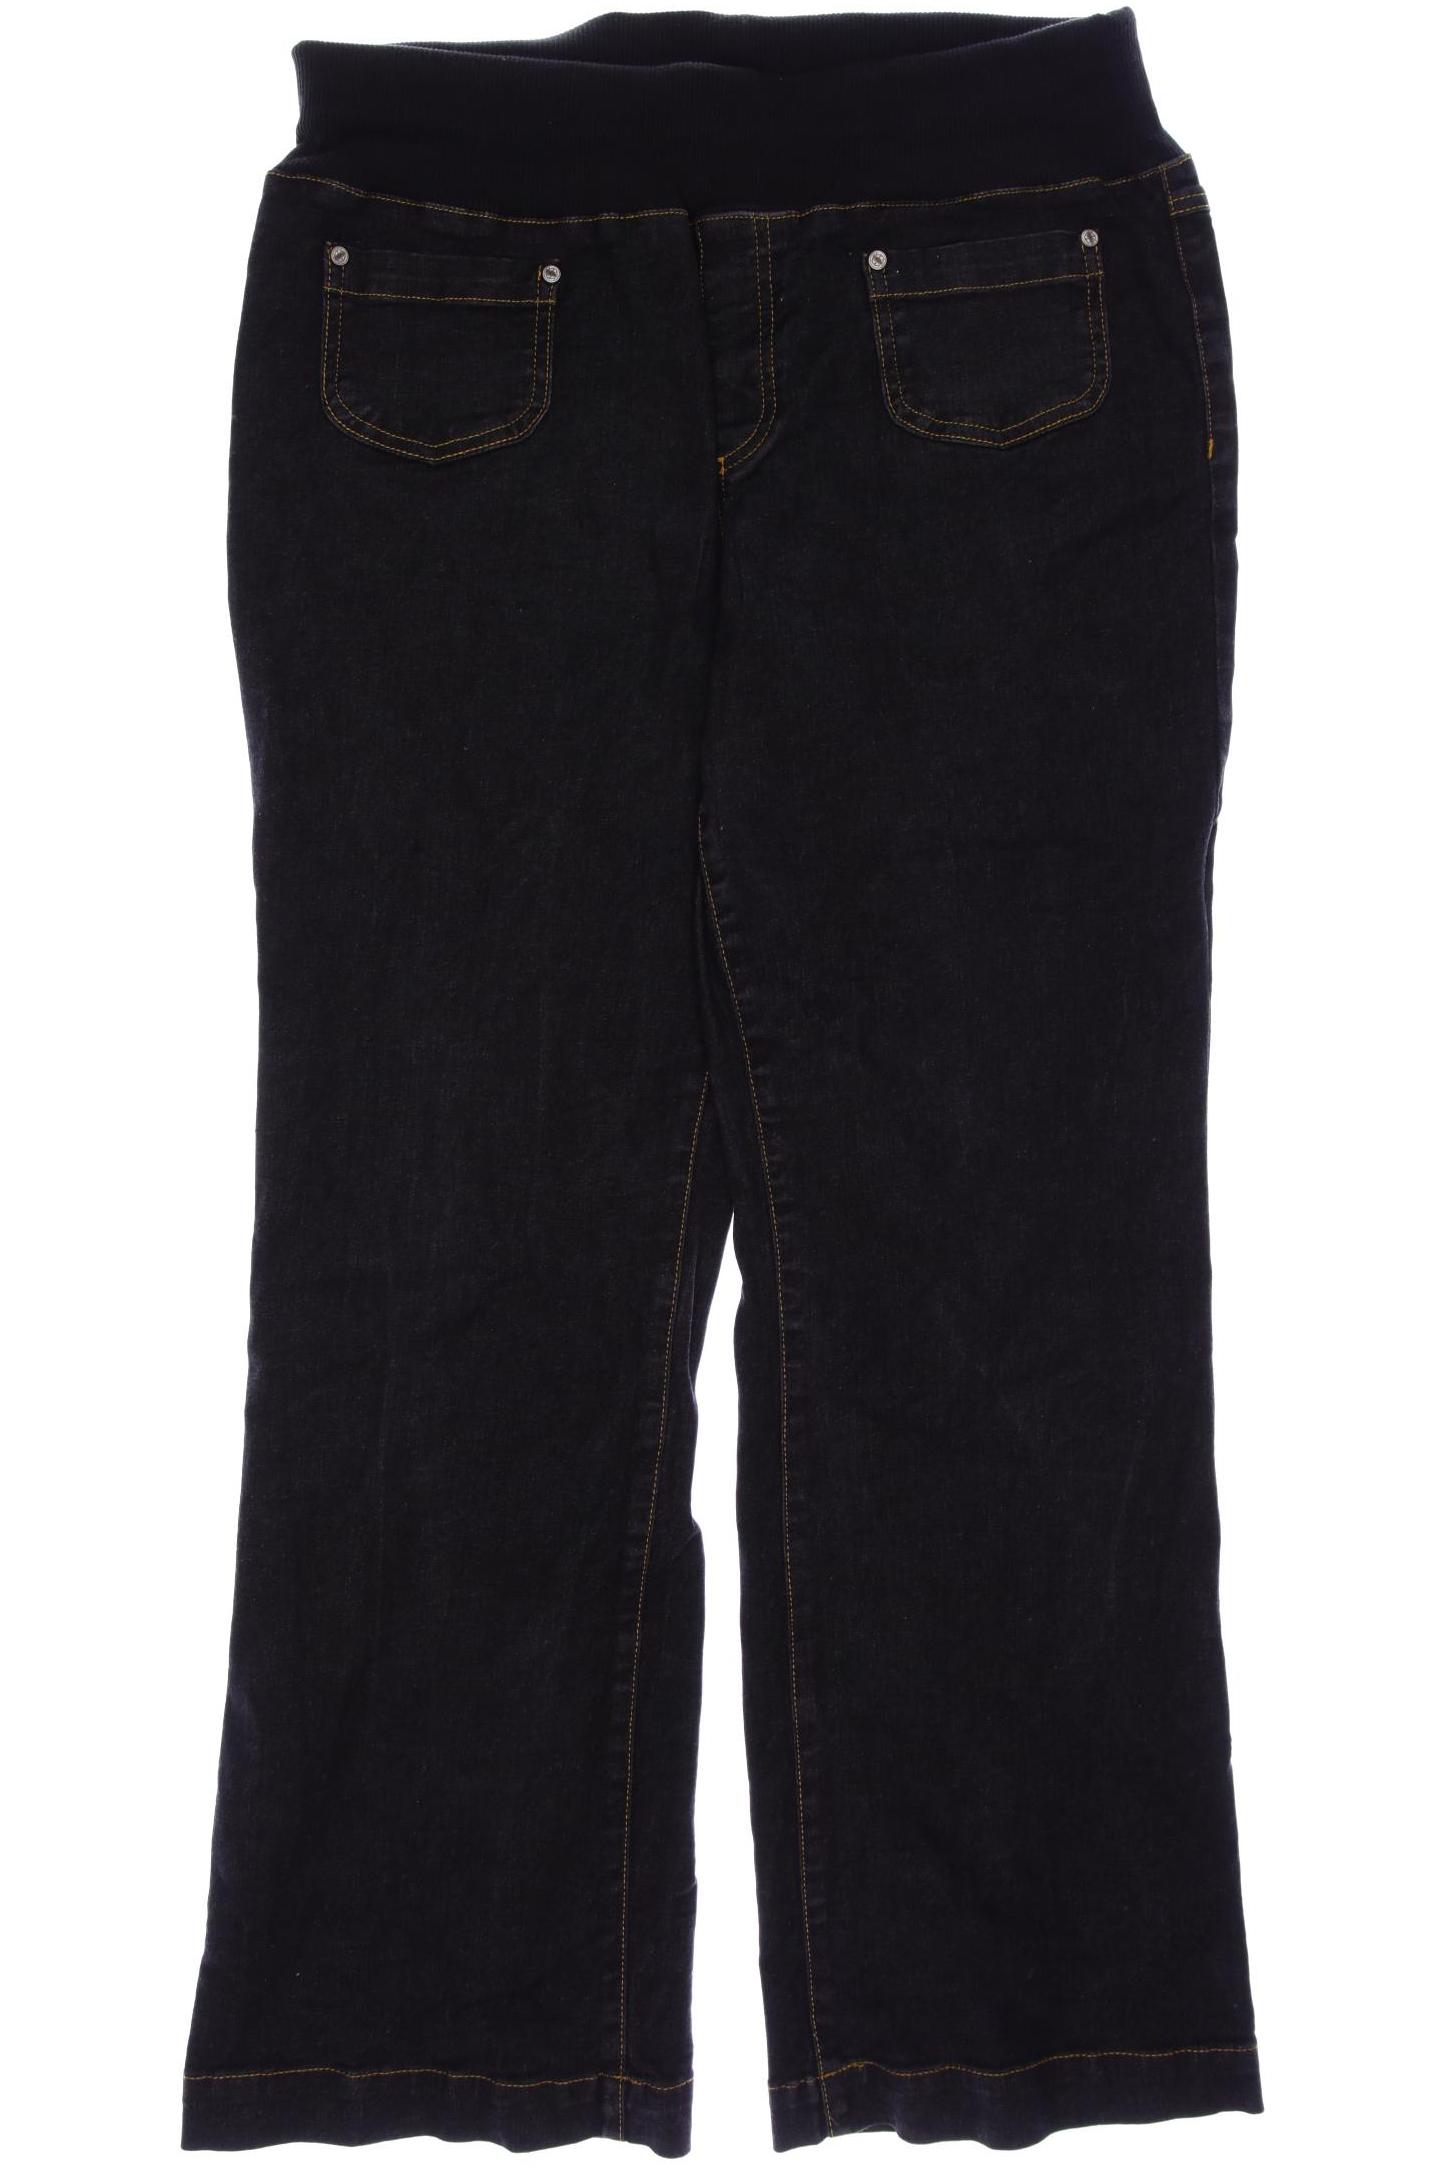 Deerberg Damen Jeans, schwarz, Gr. 42 von Deerberg